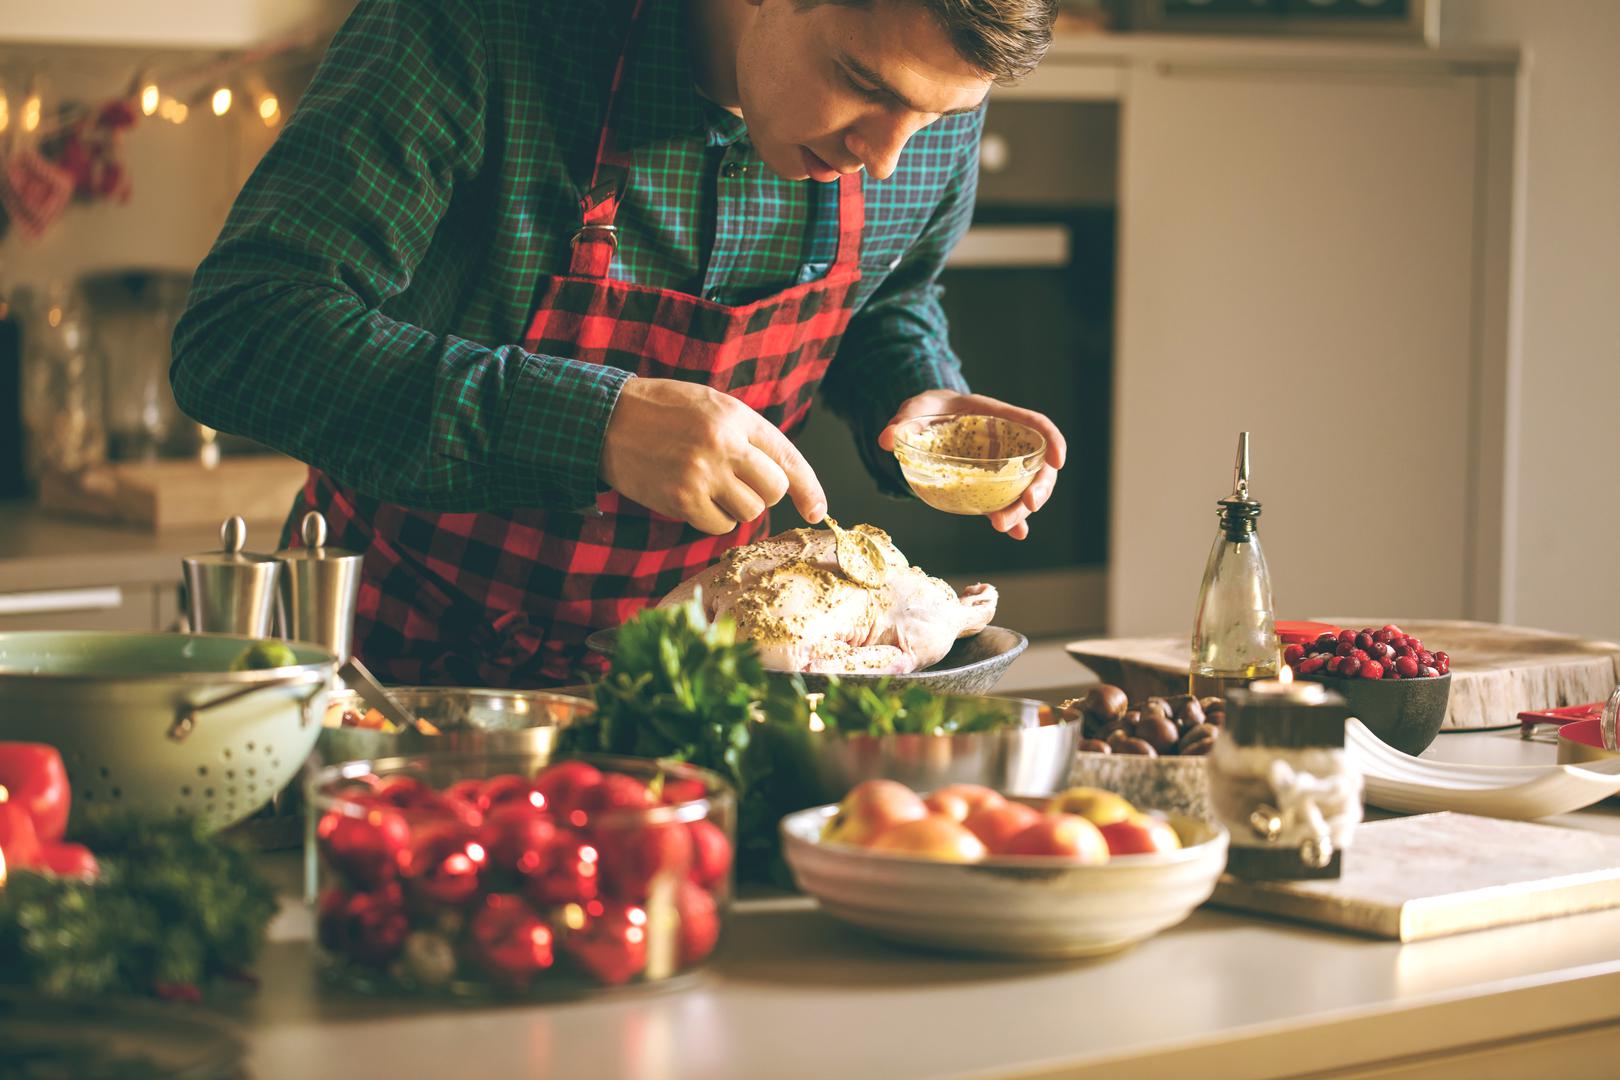 2. Ograničite jedenje vani: Kuhanje obroka kod kuće omogućuje vam kontrolu kvalitete sastojaka, veličine porcija i drugih čimbenika koji mogu utjecati na vaše zdravlje i težinu. Kada želi prevagnuti vagu u svoju korist, Hennigan izbjegava hranu za van i restorane. 